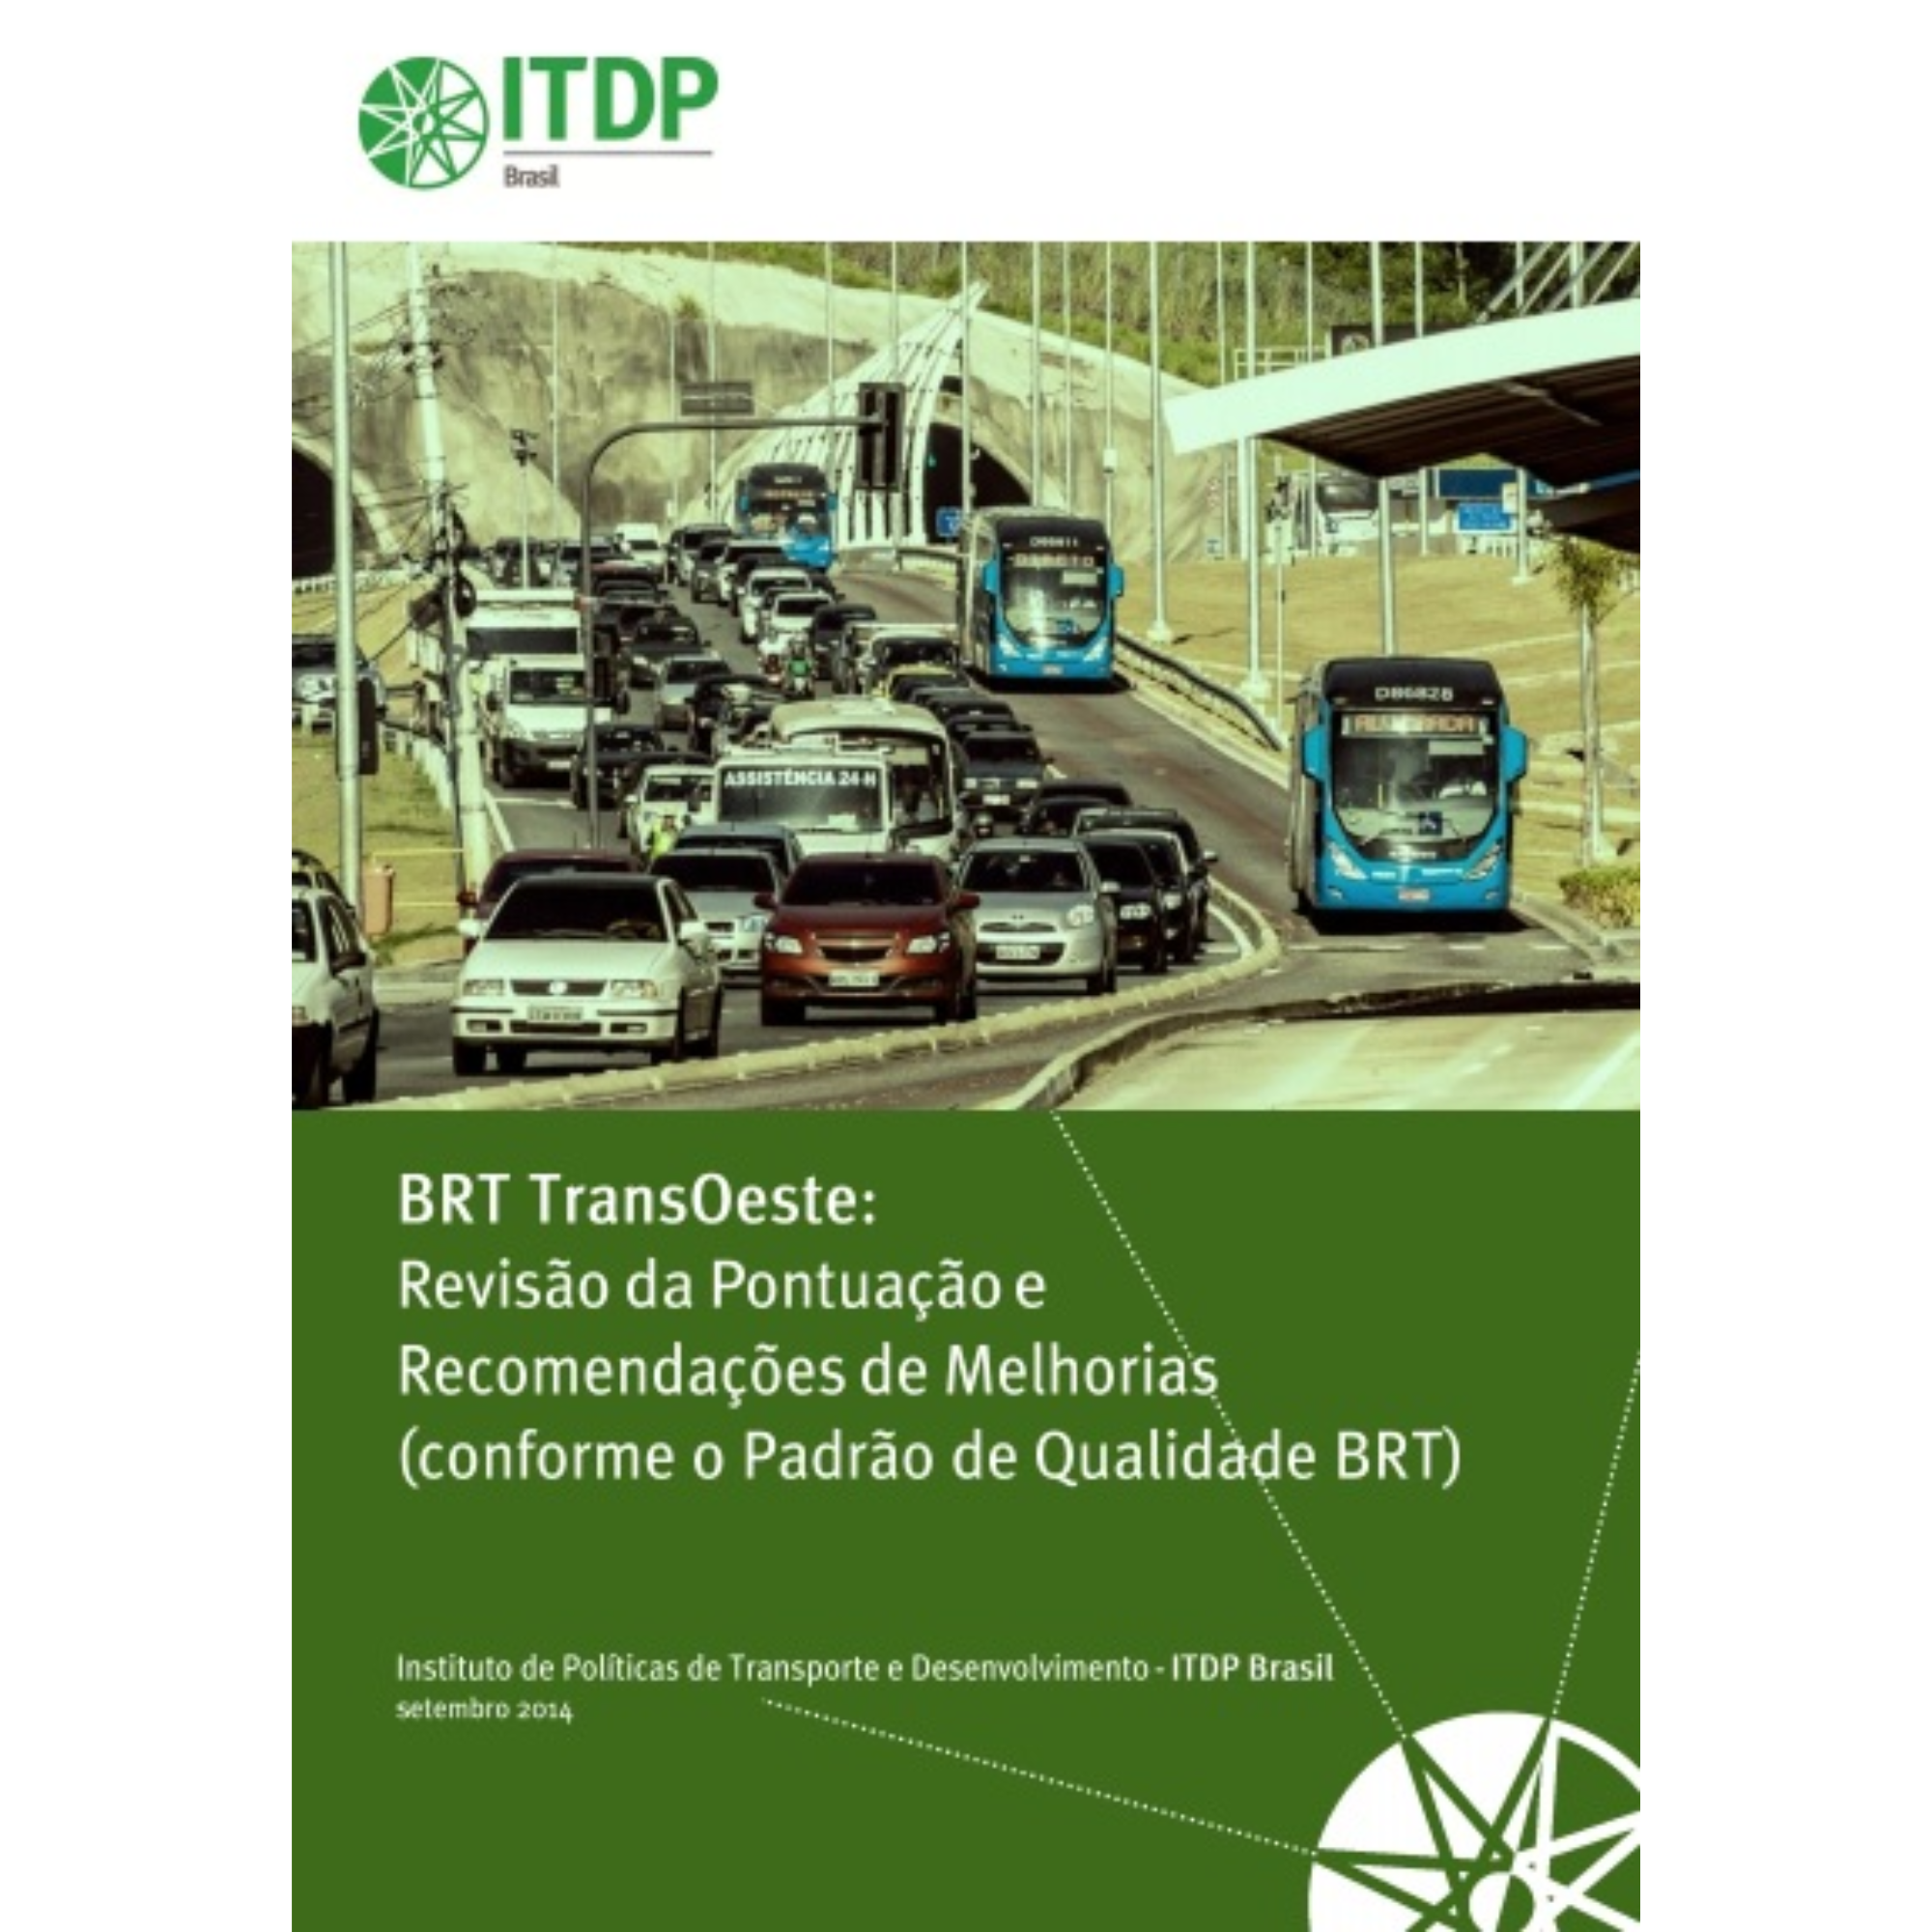 BRT Transoeste: Revisão da pontuação e recomendações de melhorias